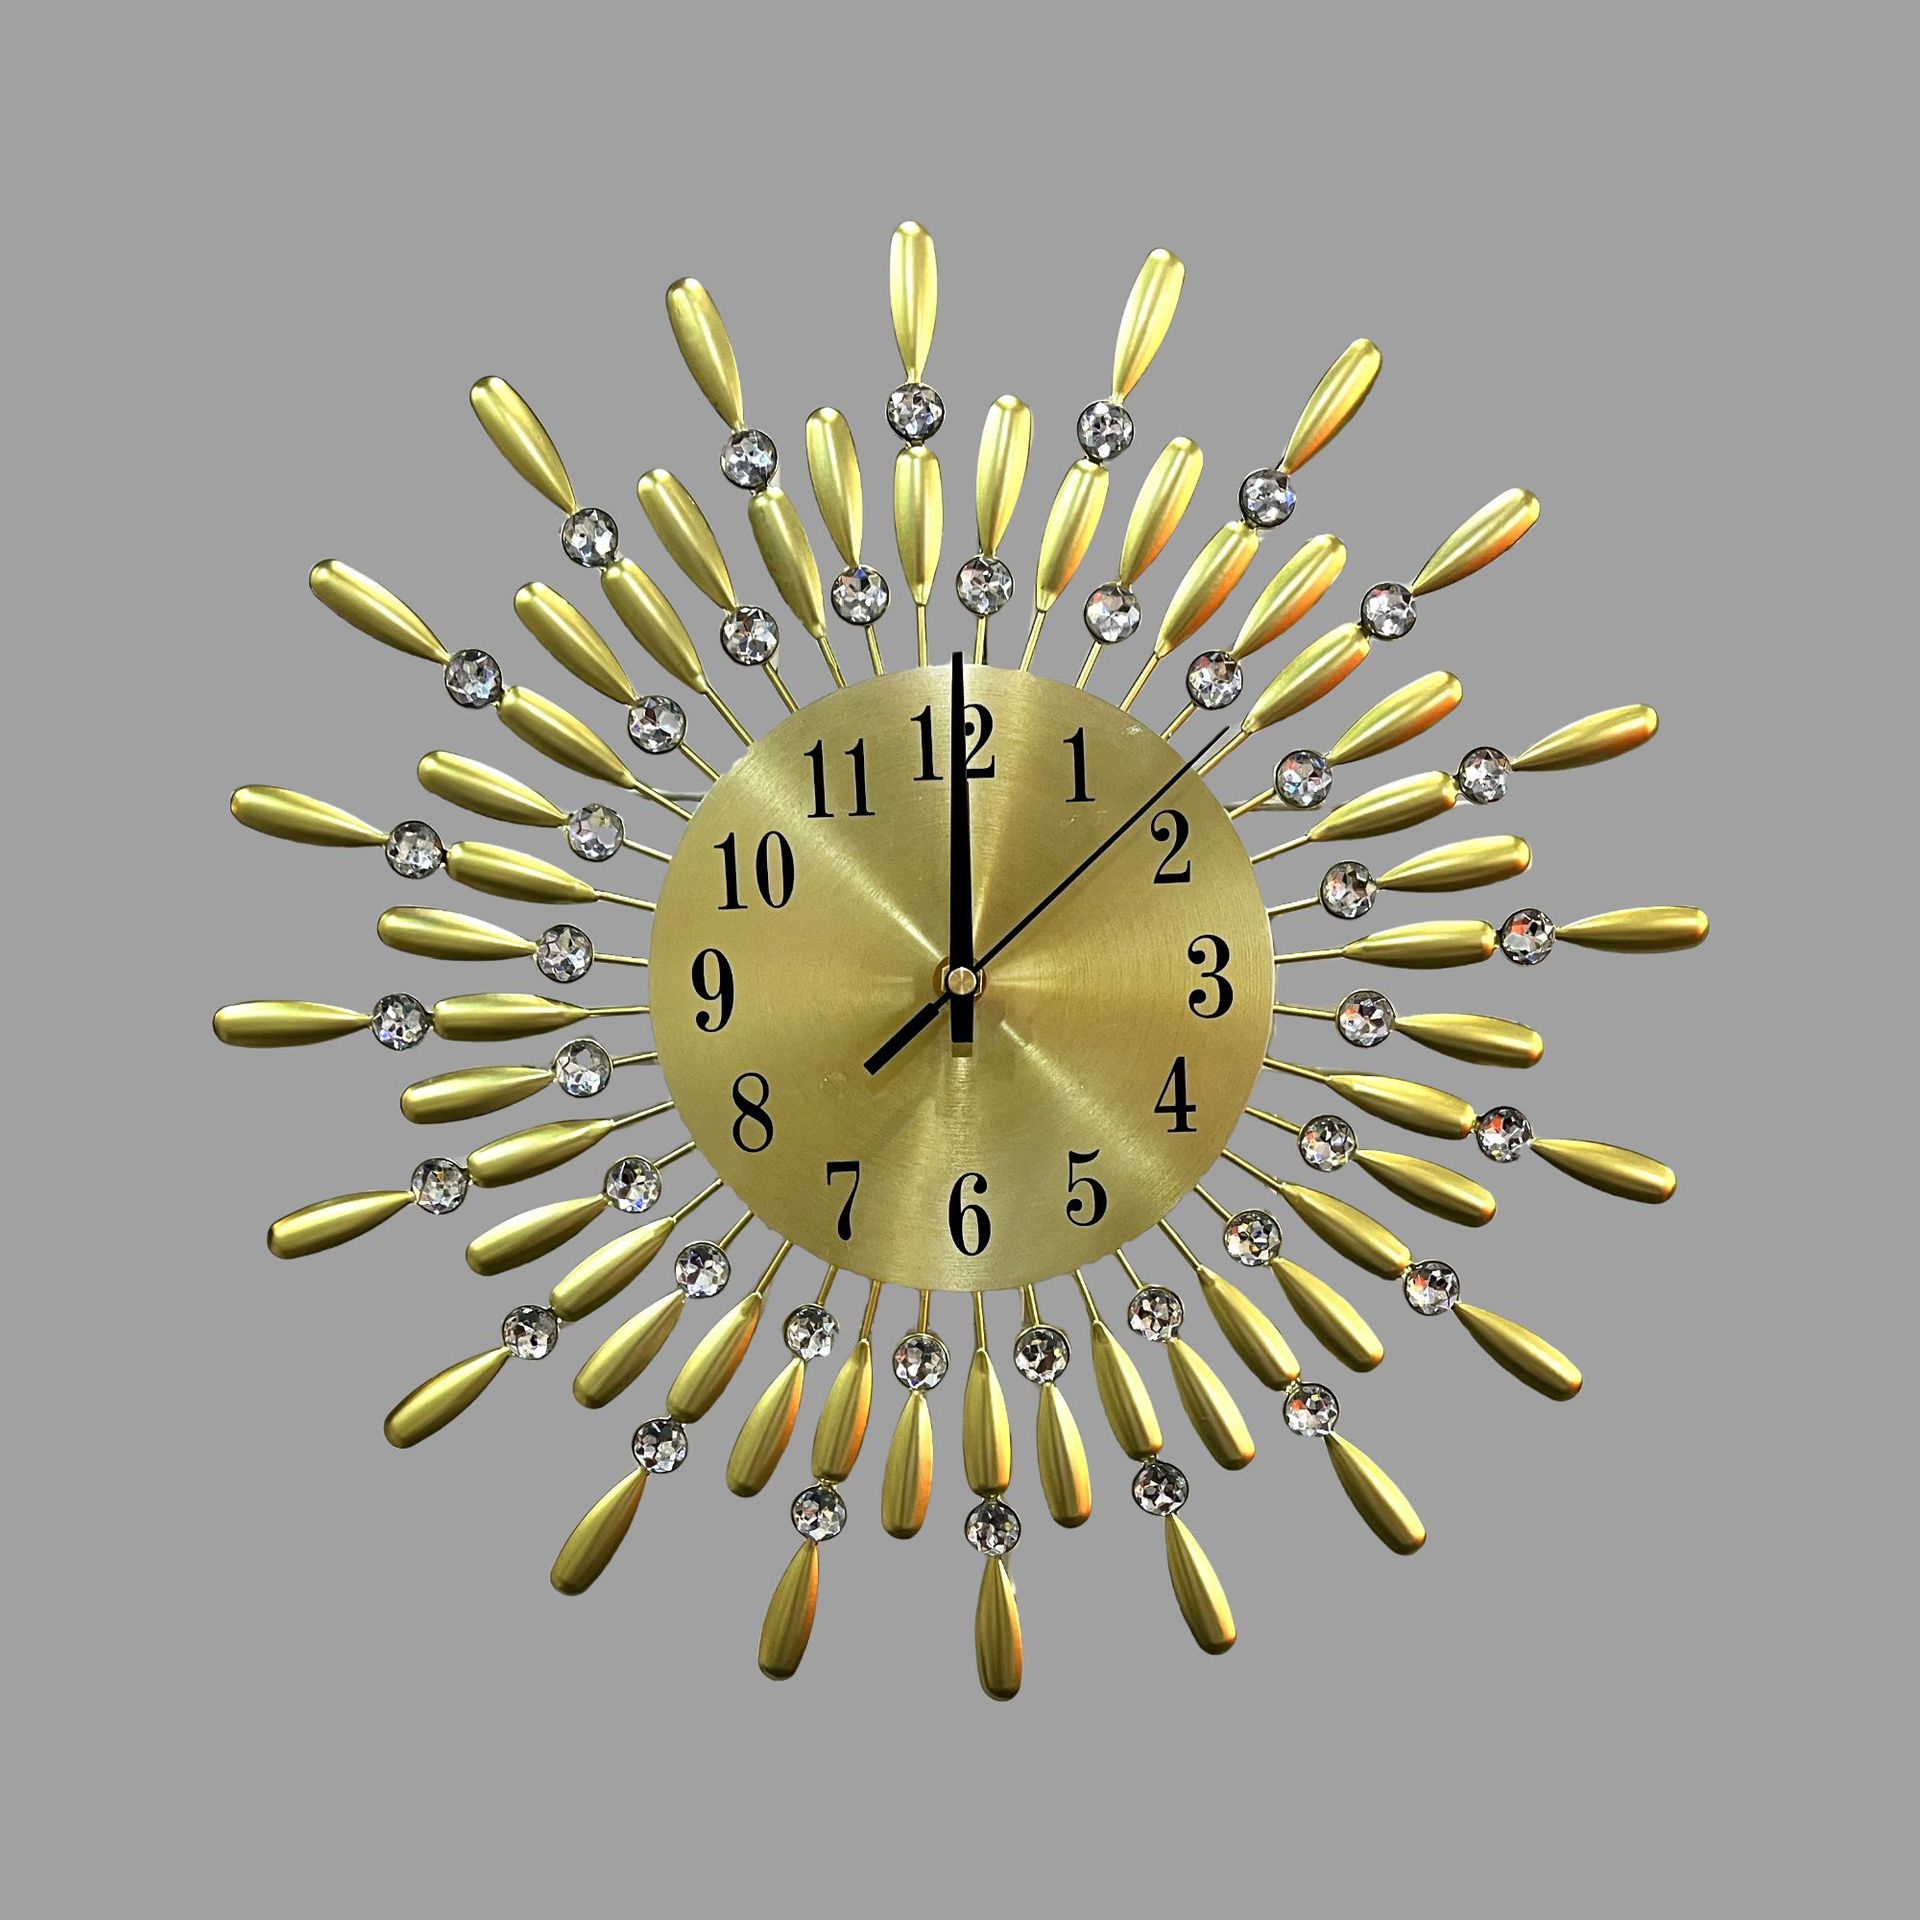 艺术壁钟创意挂钟时钟静音工艺时尚外贸金属镶钻满天星壁挂铁艺钟